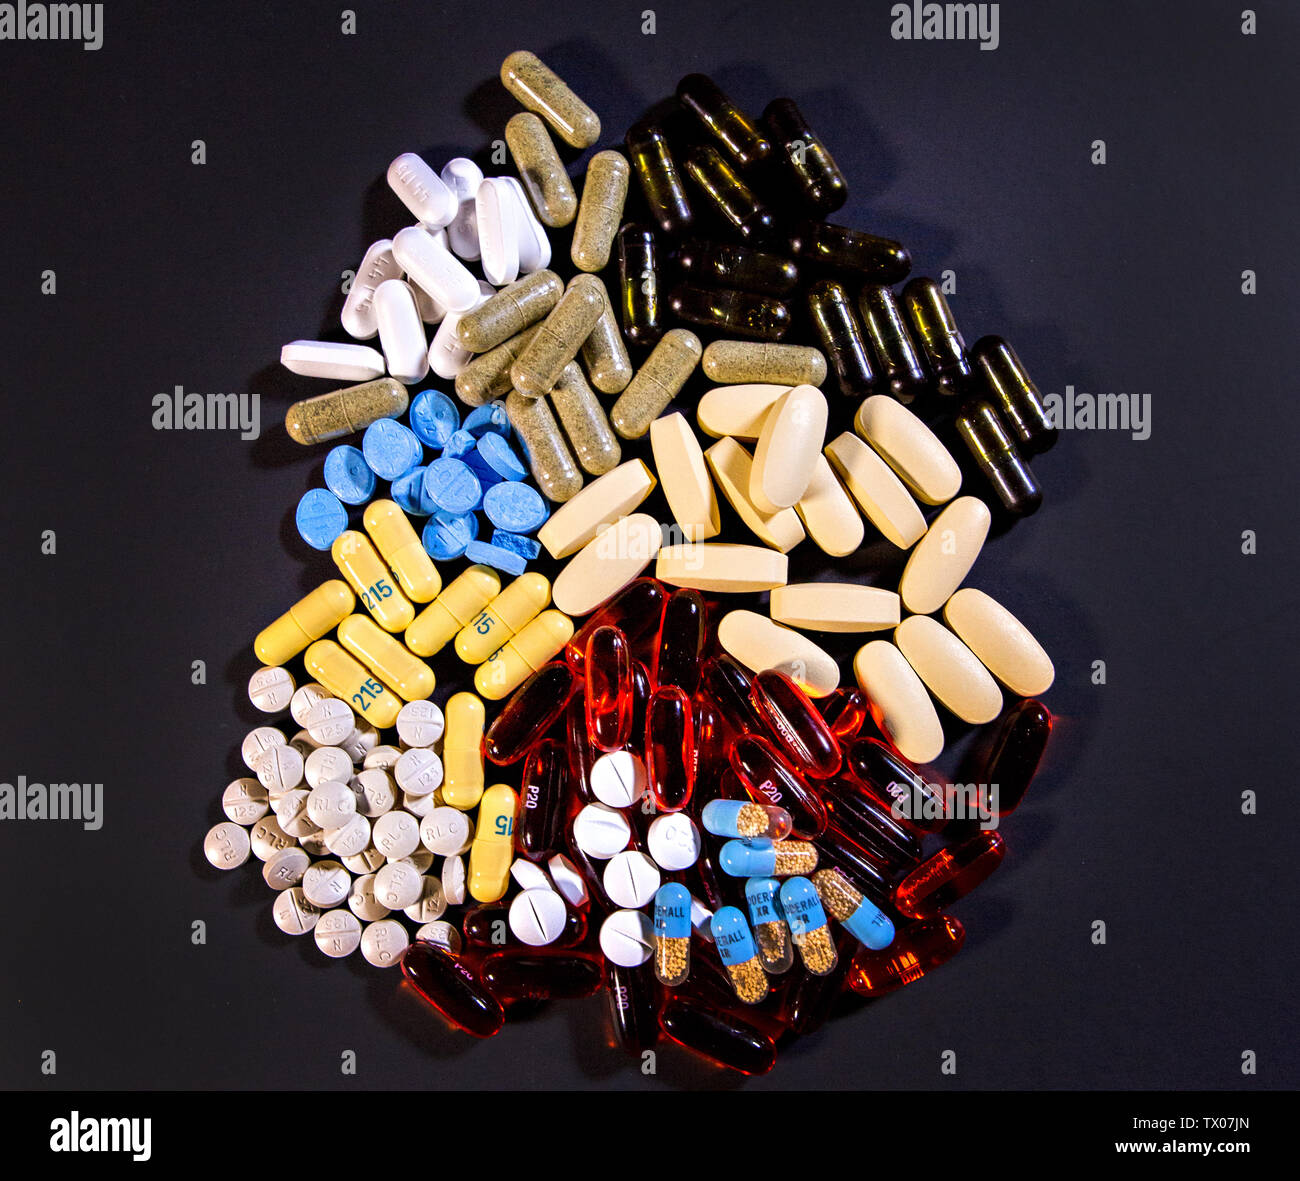 Ein bunter Haufen von Pillen sitzt auf einem Schwarzen Tisch. Stockfoto